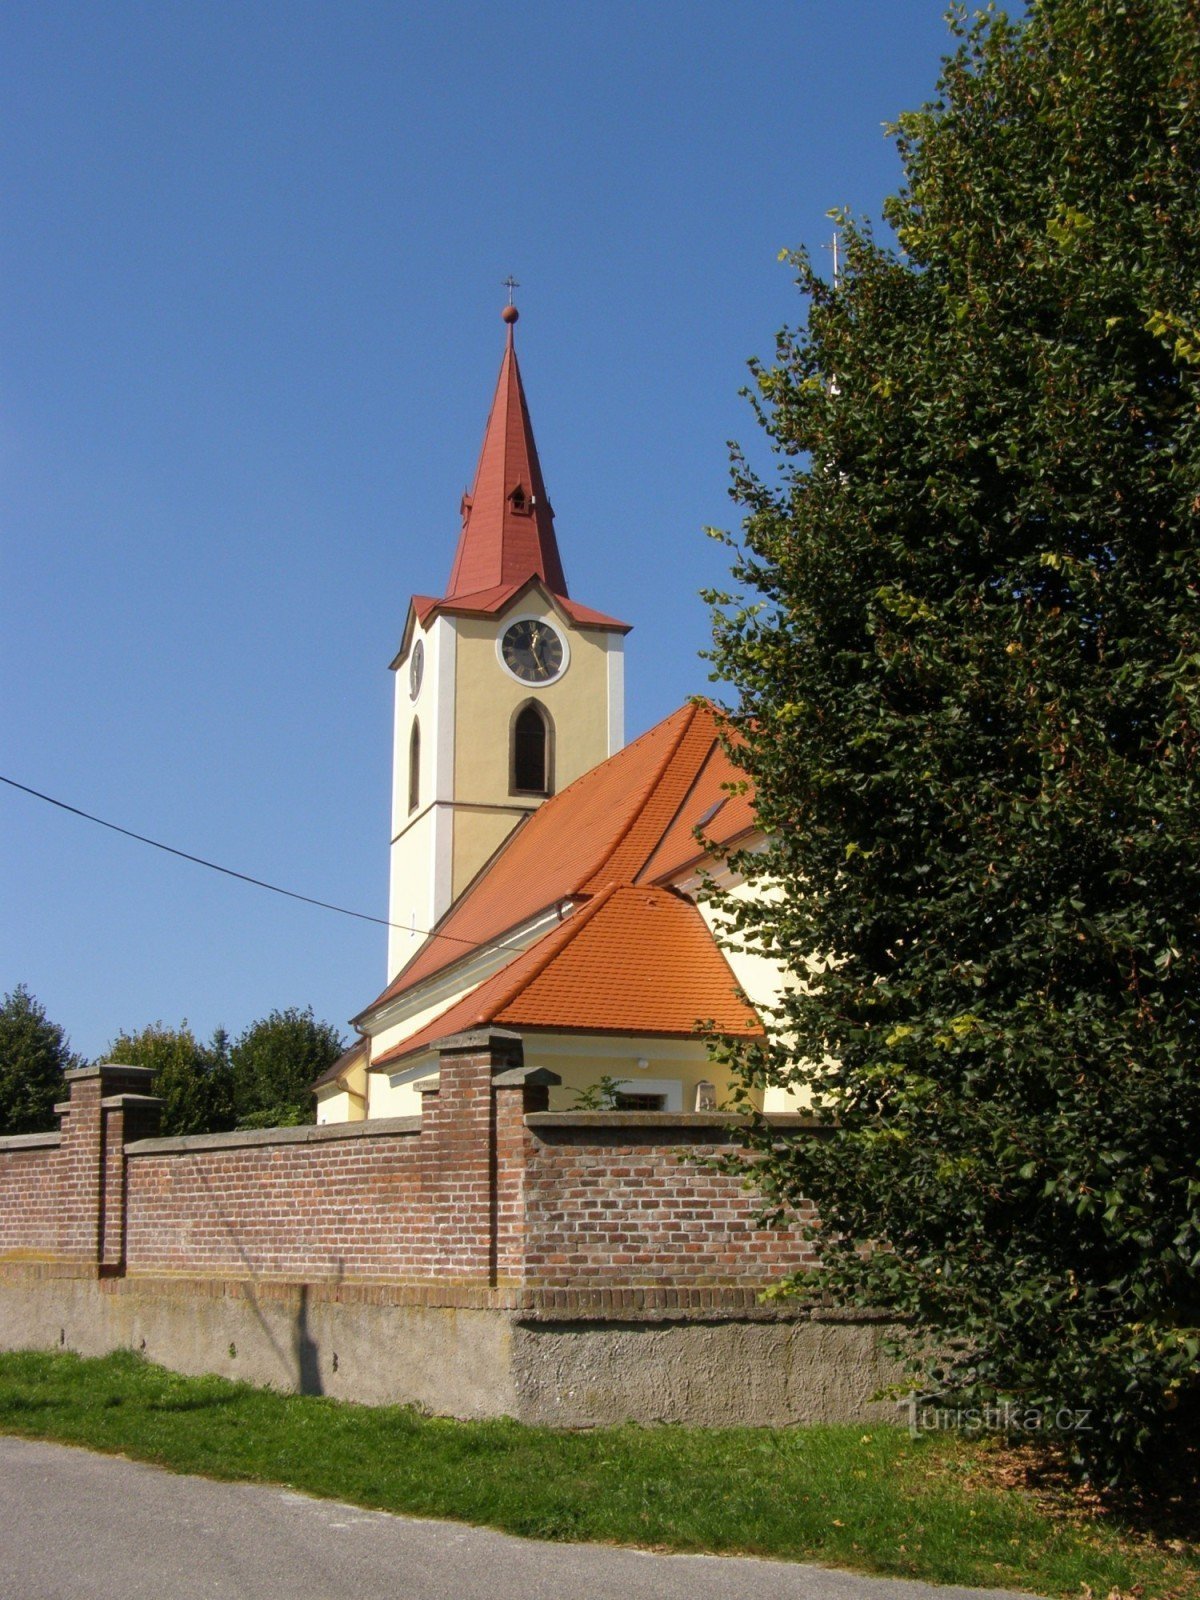 Ясенна - церква св. Юра